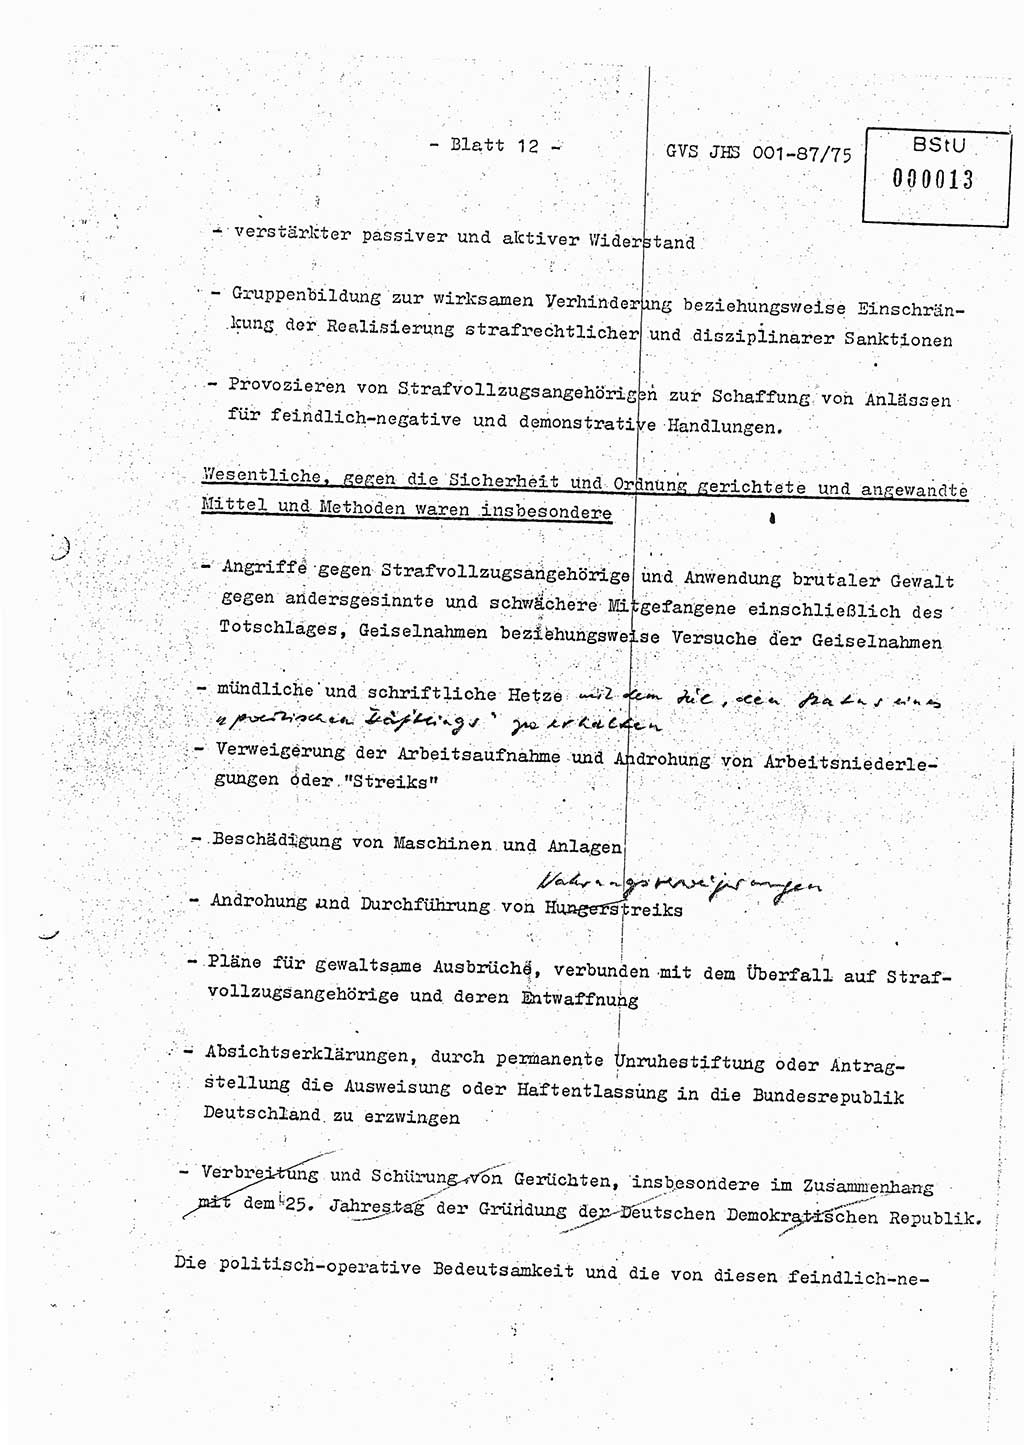 Diplomarbeit Hauptmann Volkmar Heinz (Abt. ⅩⅣ), Oberleutnant Lothar Rüdiger (BV Lpz. Abt. Ⅺ), Ministerium für Staatssicherheit (MfS) [Deutsche Demokratische Republik (DDR)], Juristische Hochschule (JHS), Geheime Verschlußsache (GVS) o001-87/75, Potsdam 1975, Seite 12 (Dipl.-Arb. MfS DDR JHS GVS o001-87/75 1975, S. 12)